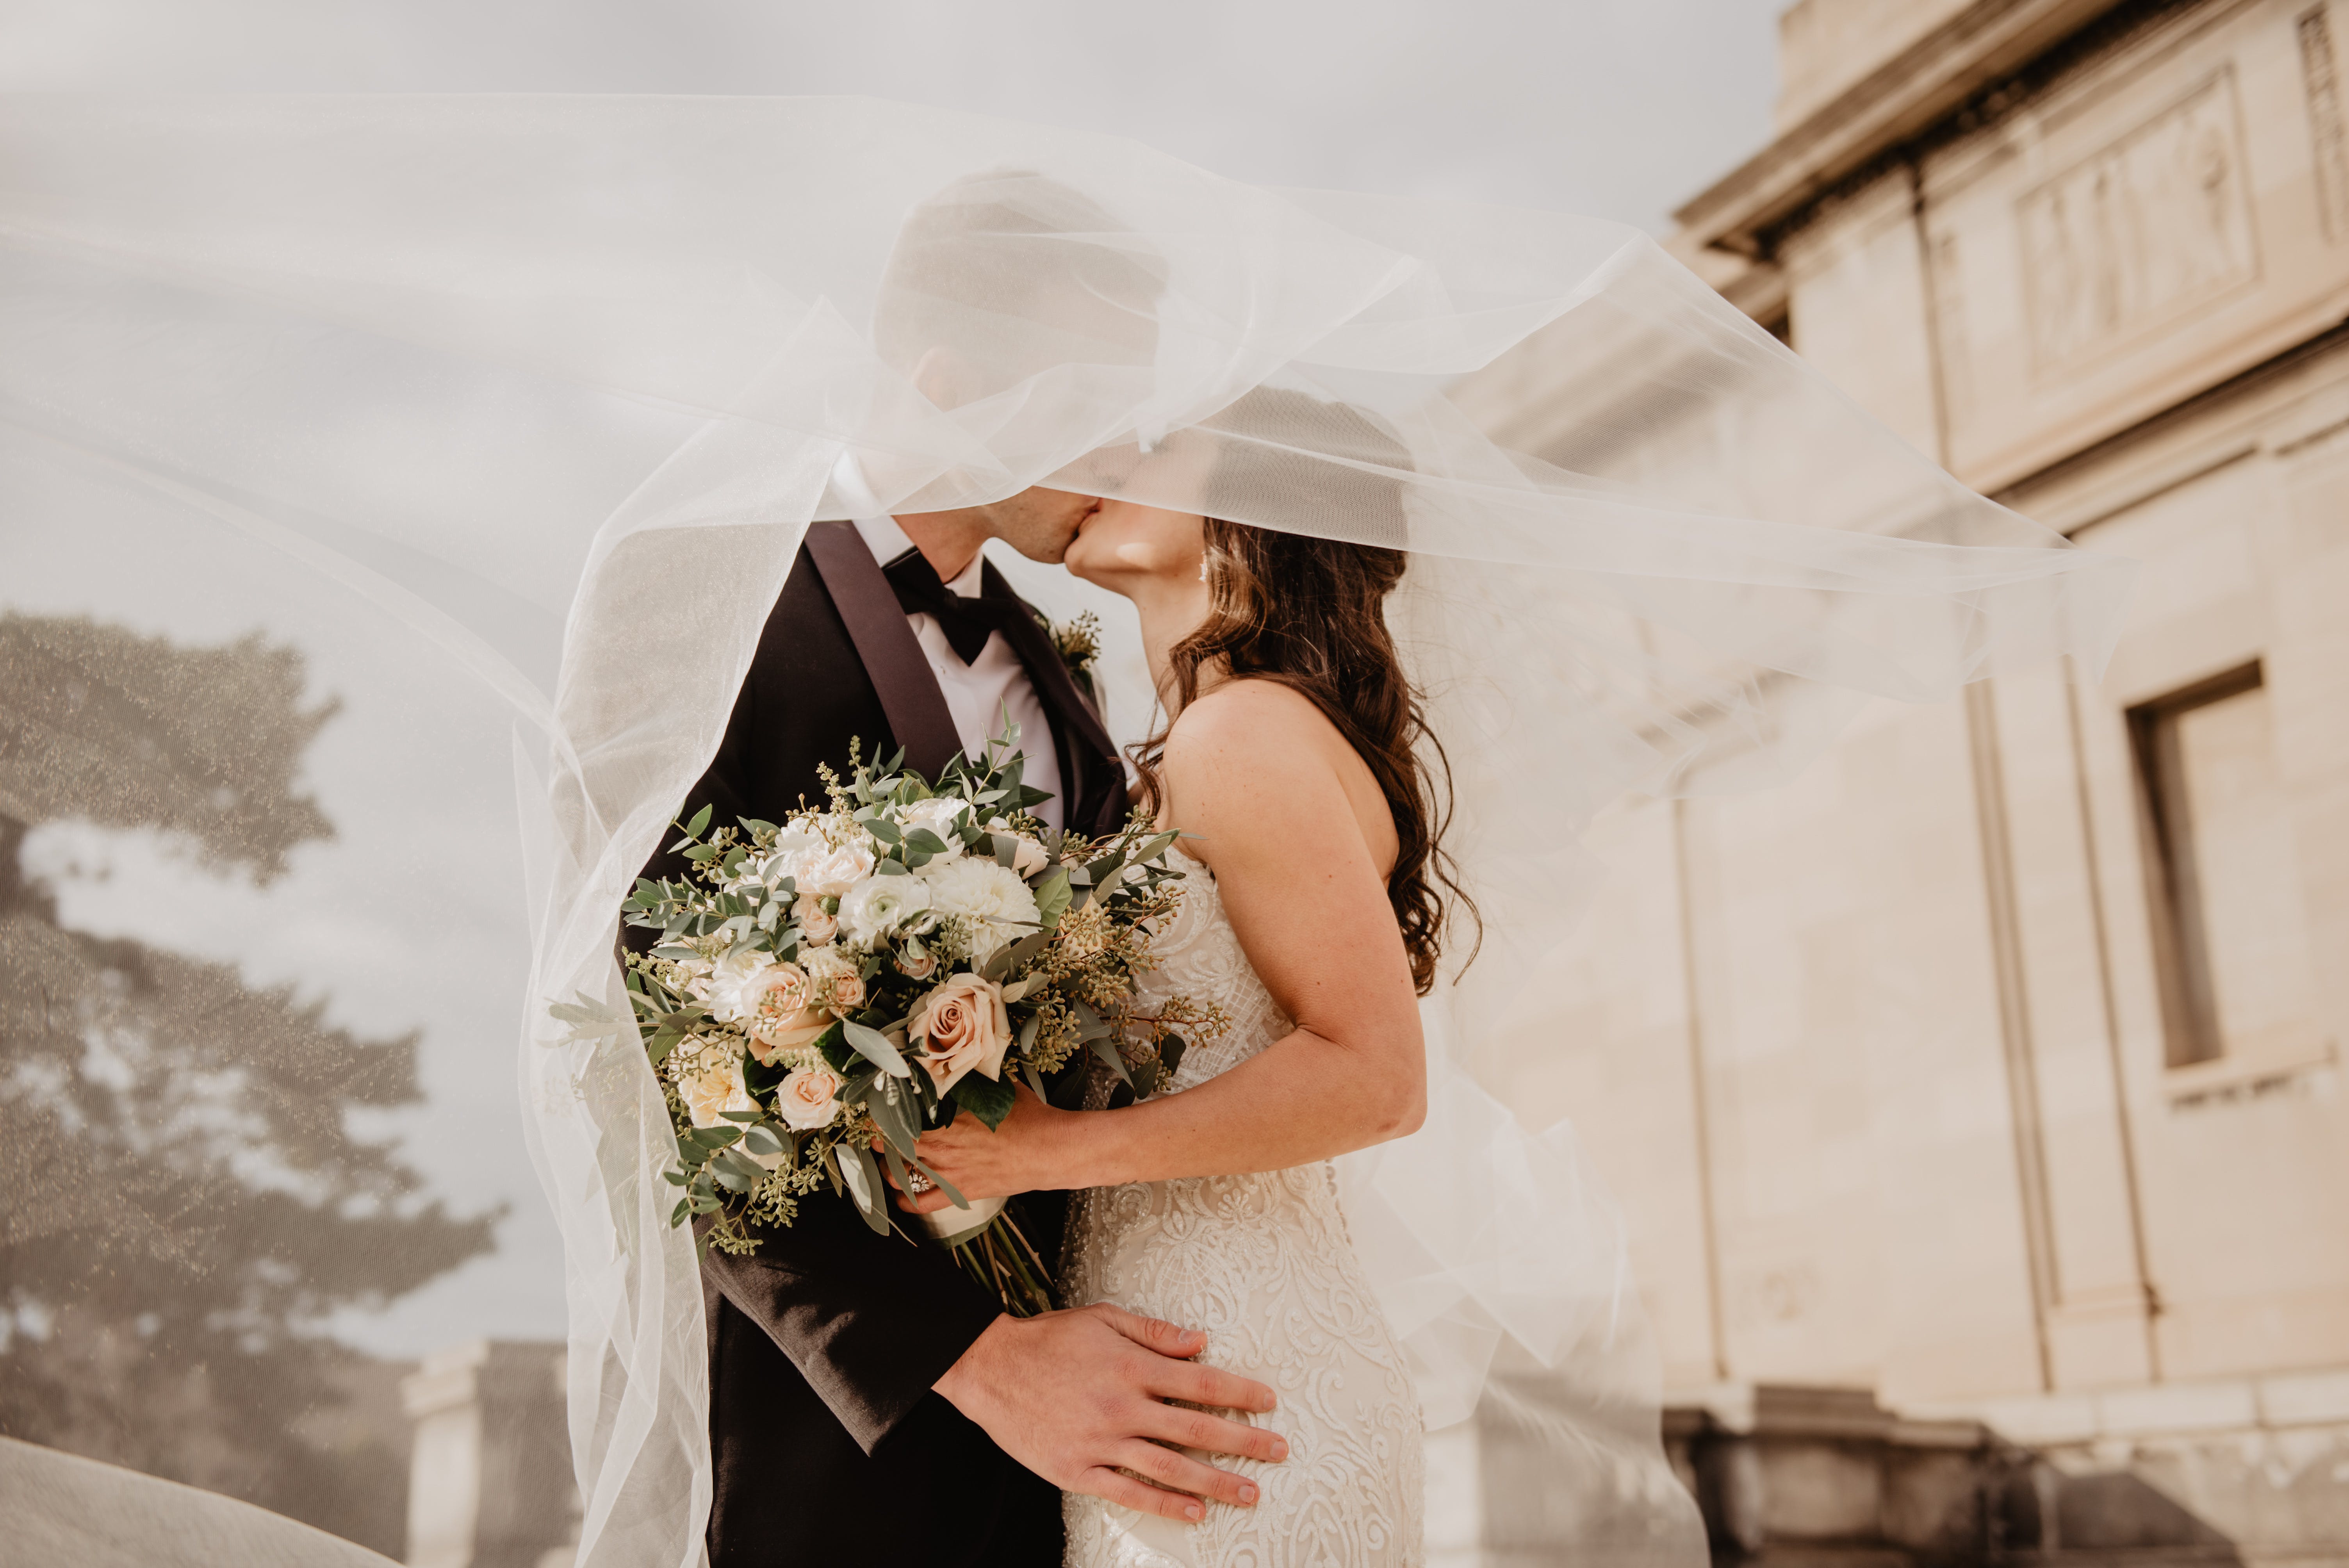 Ein frisch verheiratetes Paar küsst sich unter dem Schleier des Hochzeitskleides der Braut | Quelle: Pexels